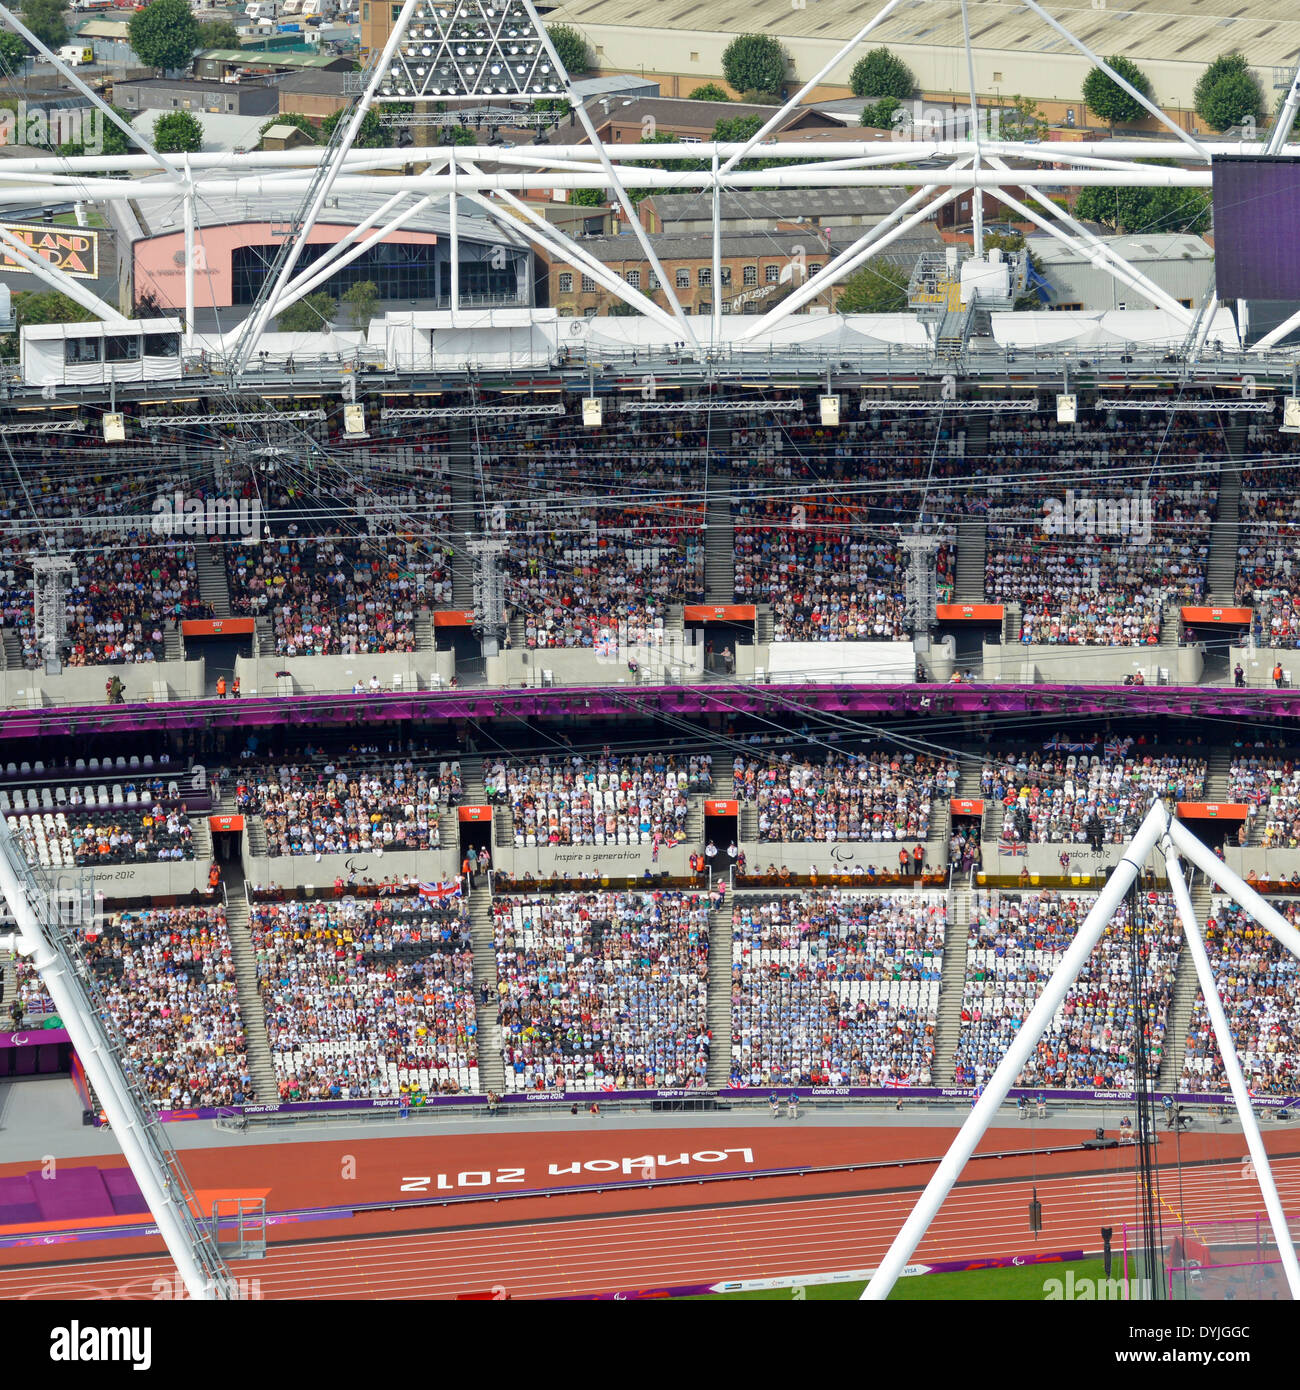 Espectadores sentados en el estadio de atletismo Londres 2012 Olympic Park desde ArcelorMittal Orbit Tower plataforma de observación durante los Juegos Paralímpicos Reino Unido Foto de stock